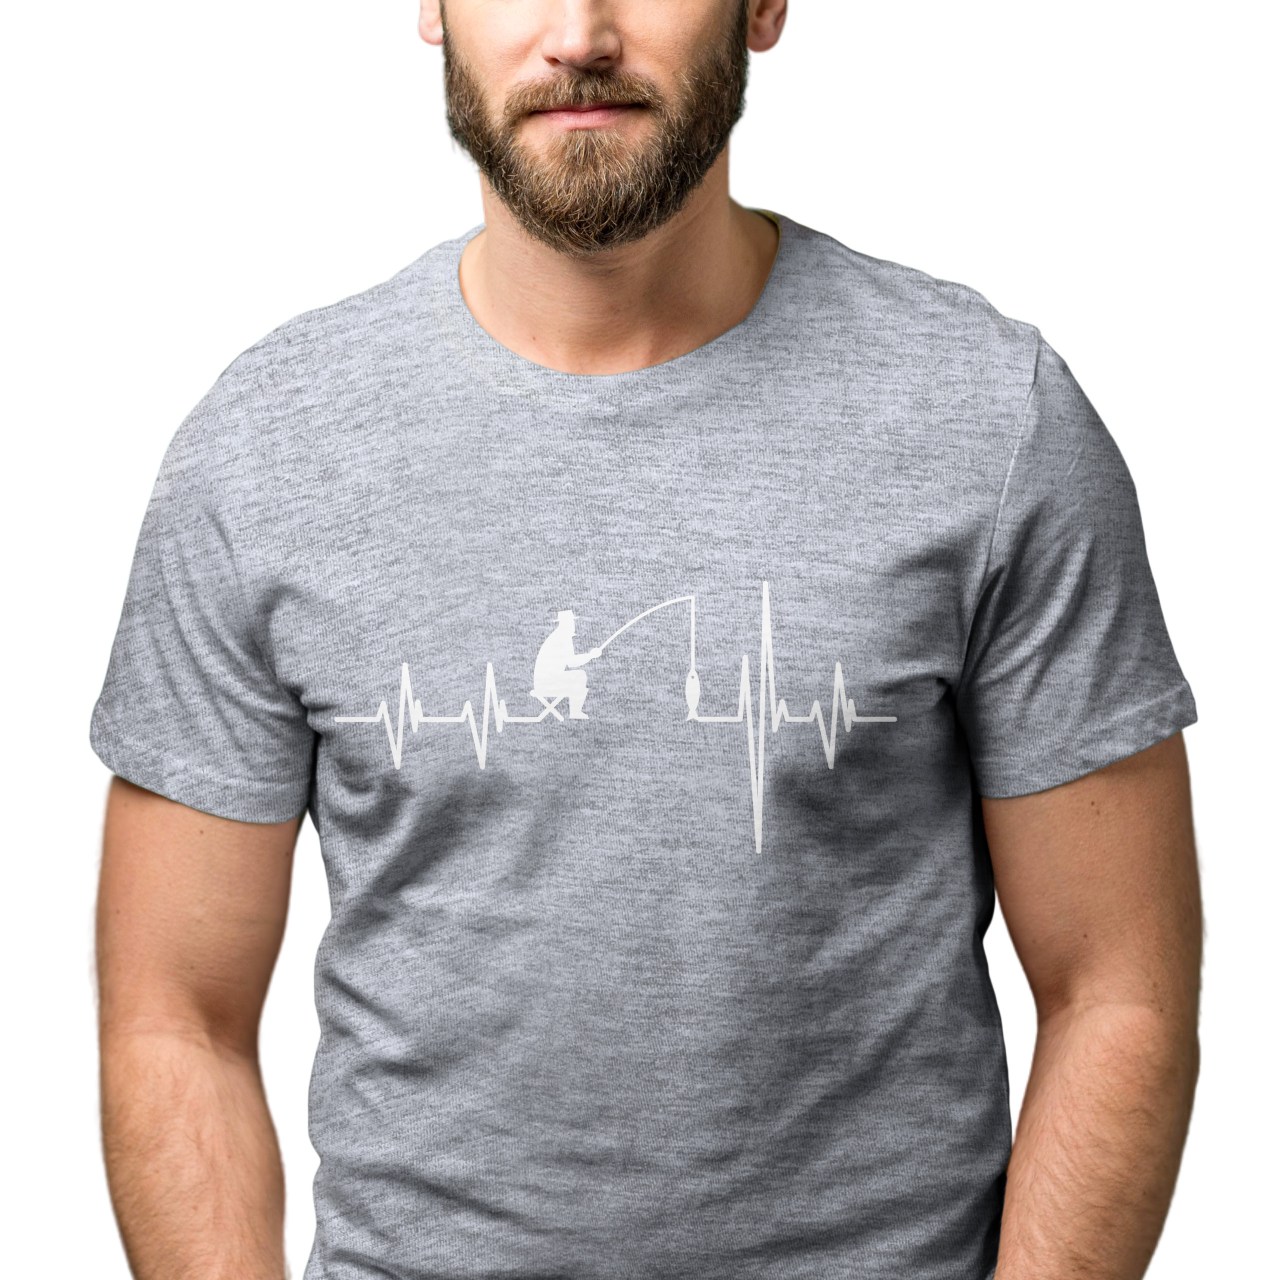 Pánské tričko s potiskem "Srdeční tep Rybář"